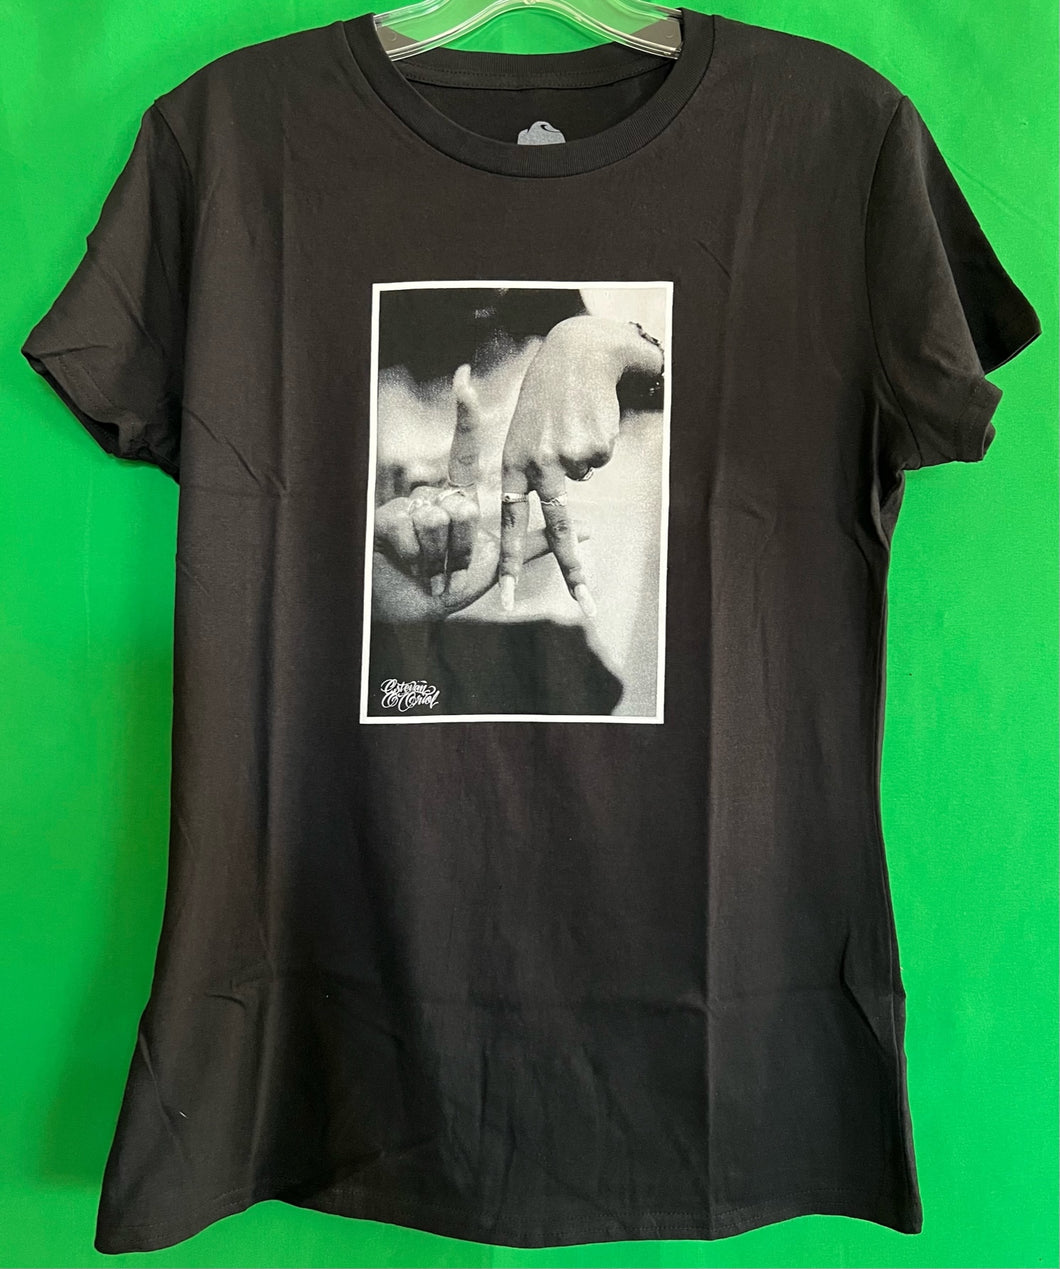 LA  Hands  (women) Black, T-shirt by: Estevan Oriol - Joker Brand